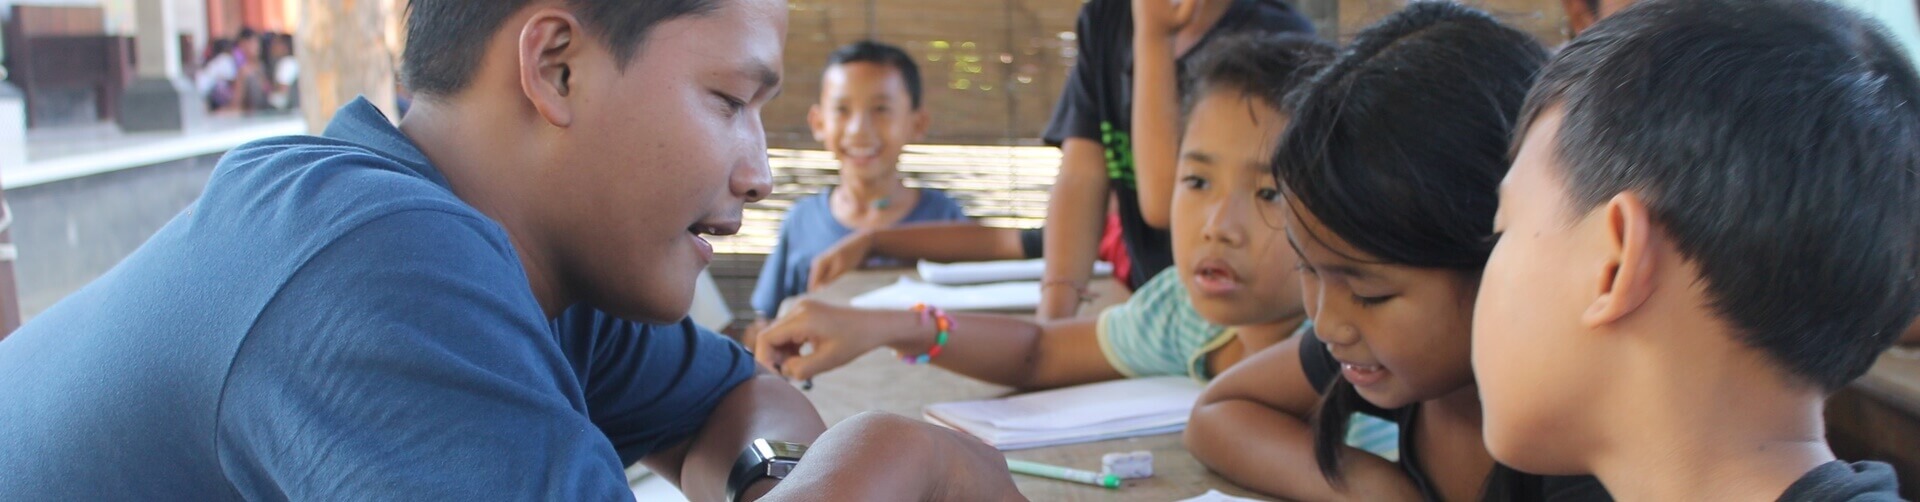 Programma di insegnamento volontario a Bali